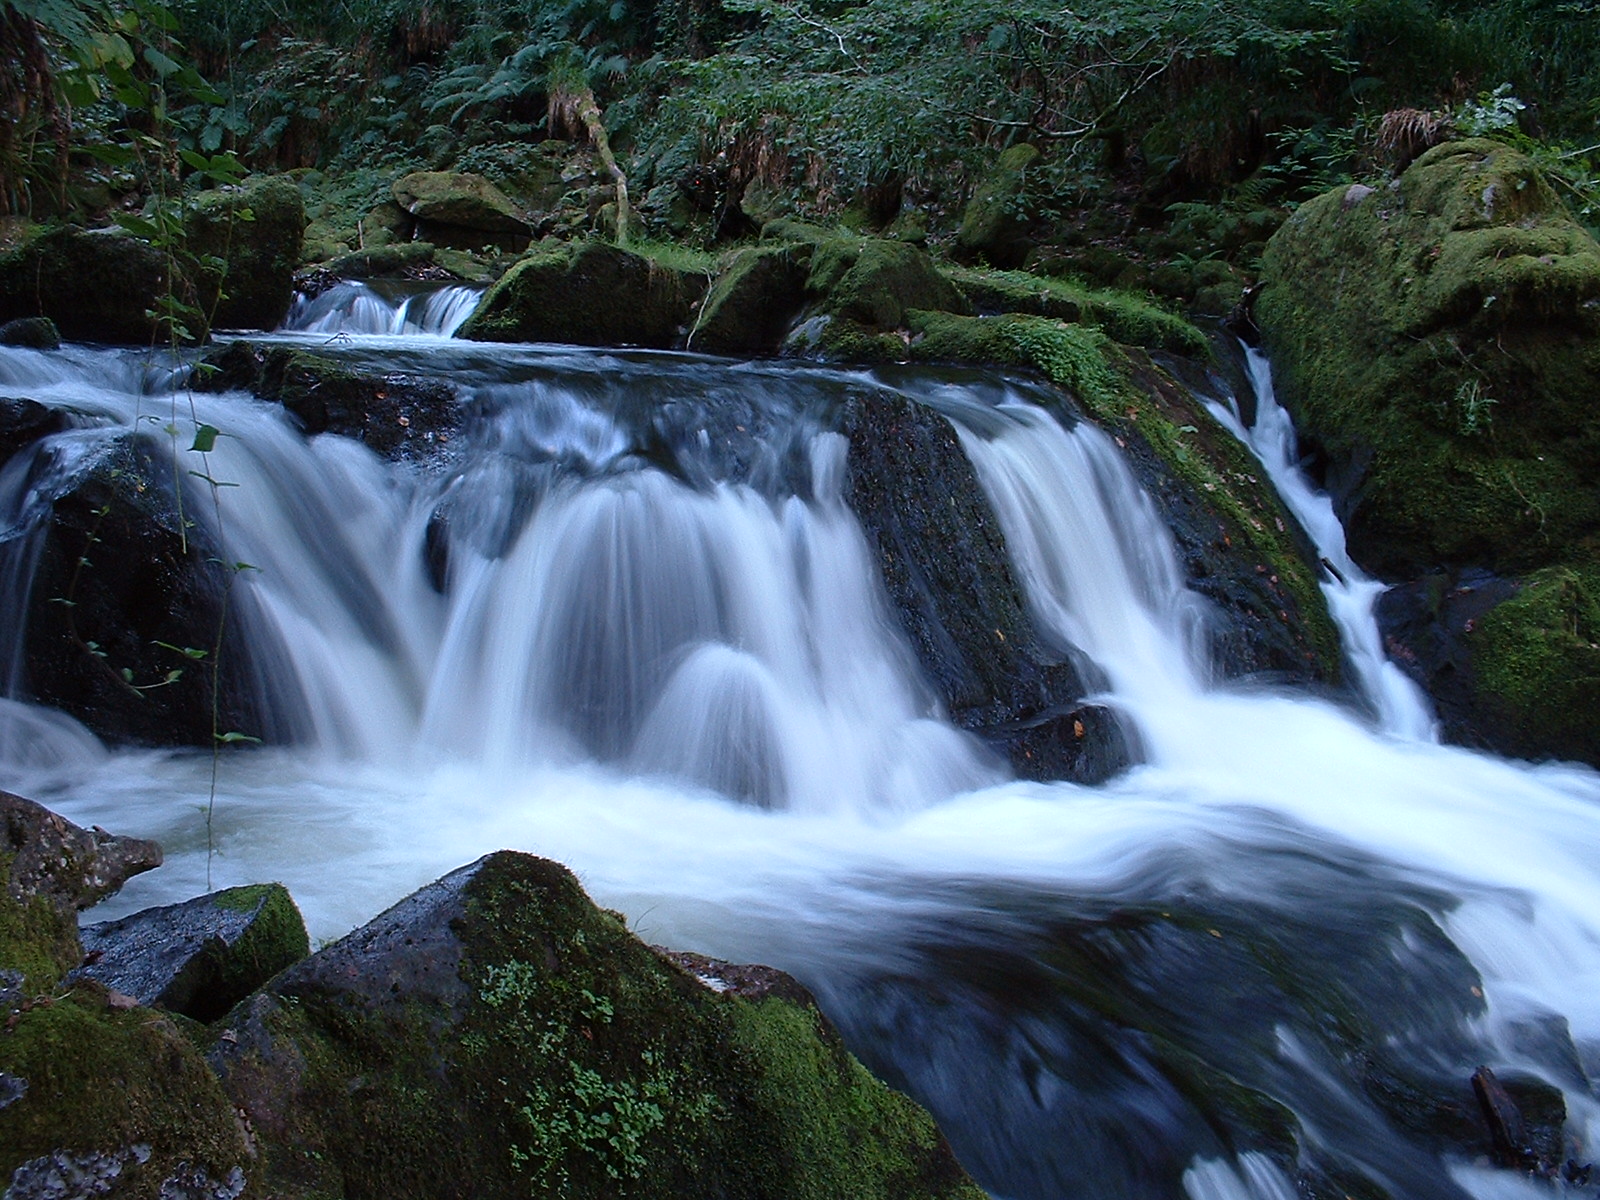 htoml waterfall roaring water flowing spray foam